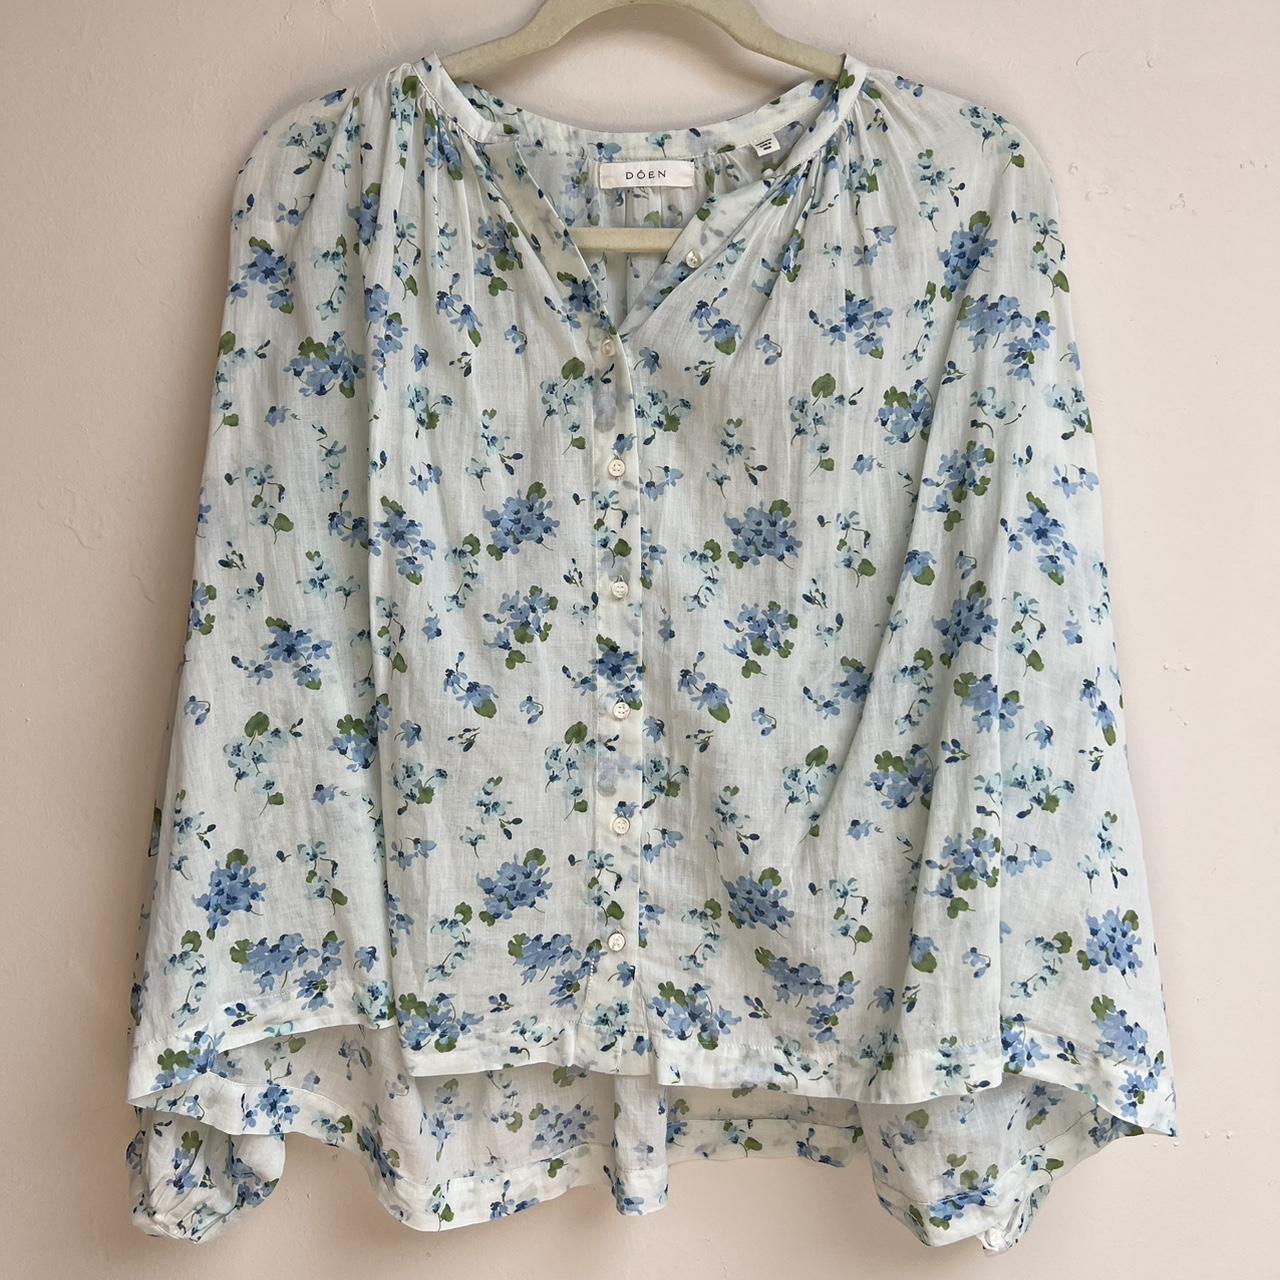 Doen Jane blouse in pretty blue floral. Size XS like... - Depop